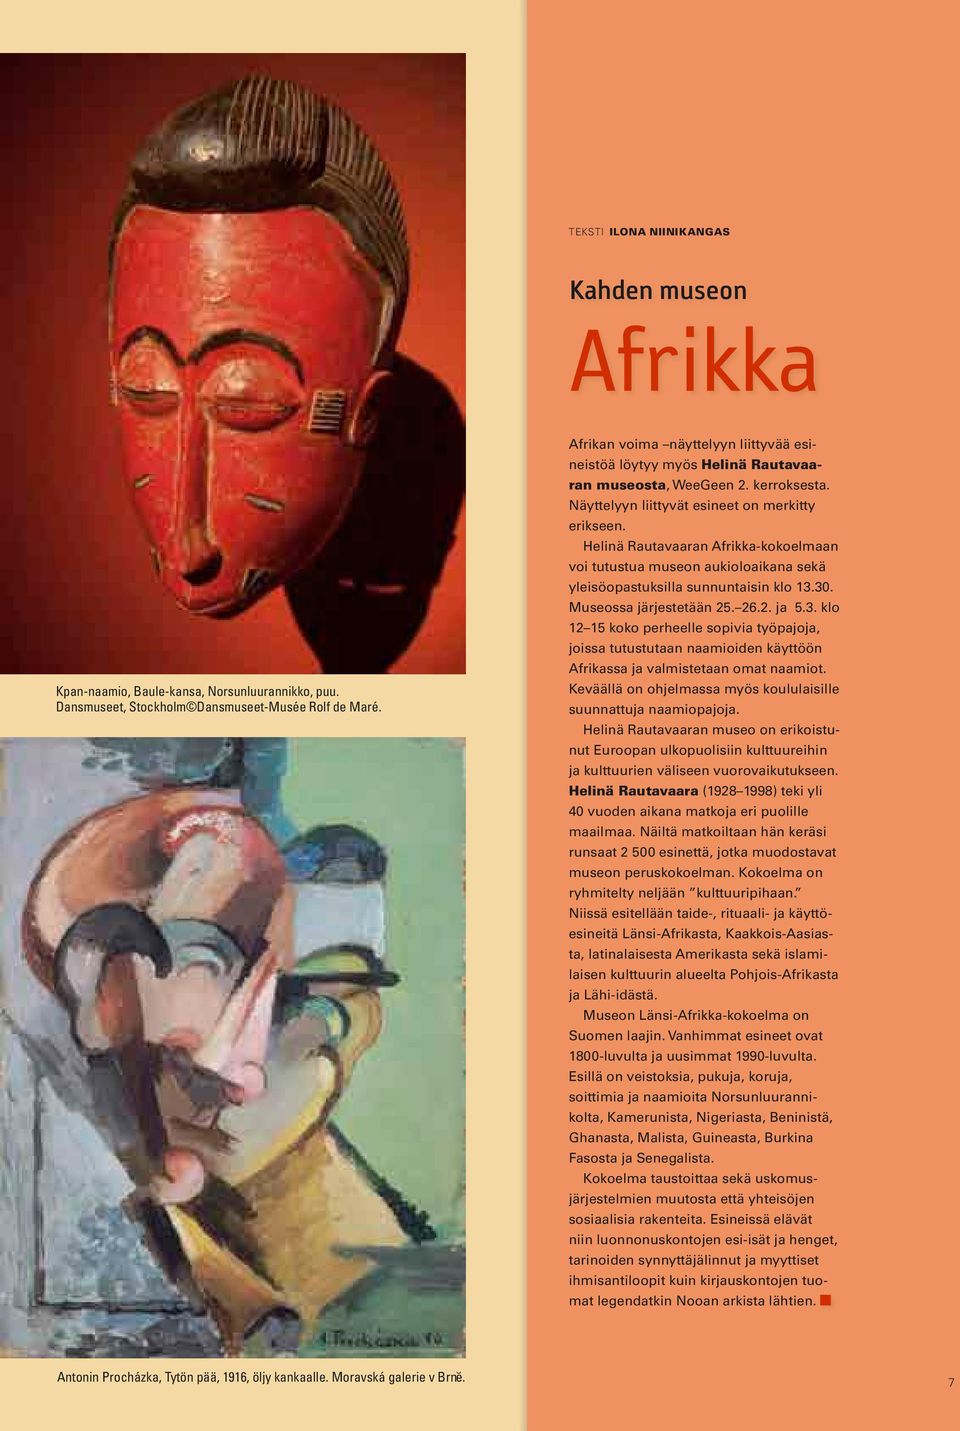 Helinä Rutvrn Afrikk-kokoelmn voi tutustu museon ukioloikn sekä yleisöopstuksill sunnuntisin klo 13.